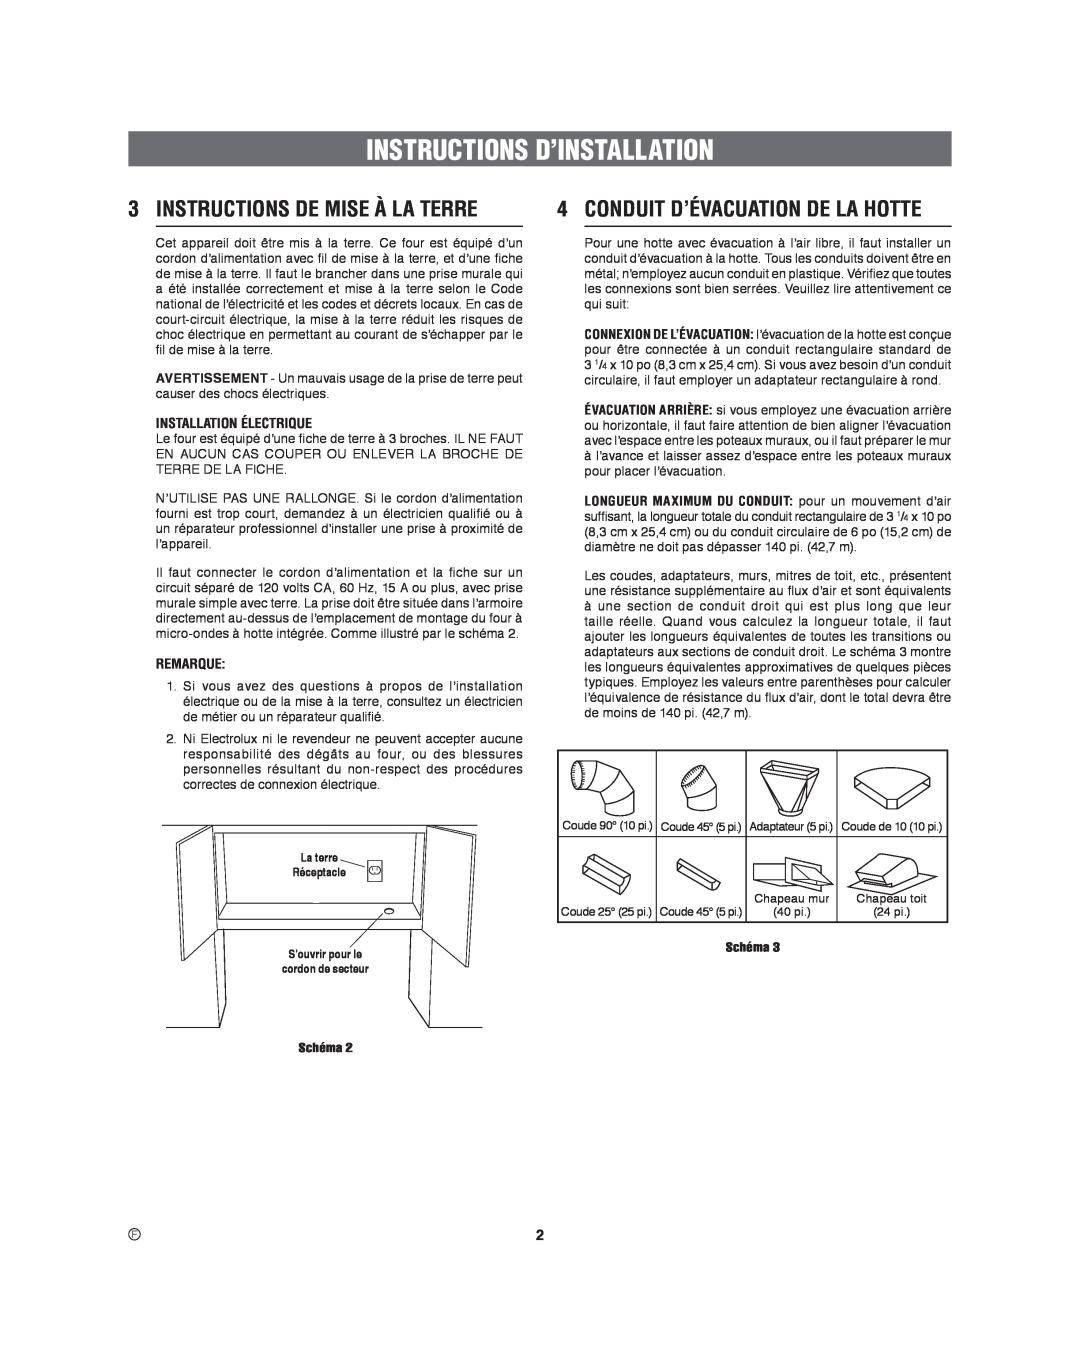 Frigidaire 316495060 manual Instructions D’Installation, Instructions De Mise À La Terre, Conduit D’Évacuation De La Hotte 